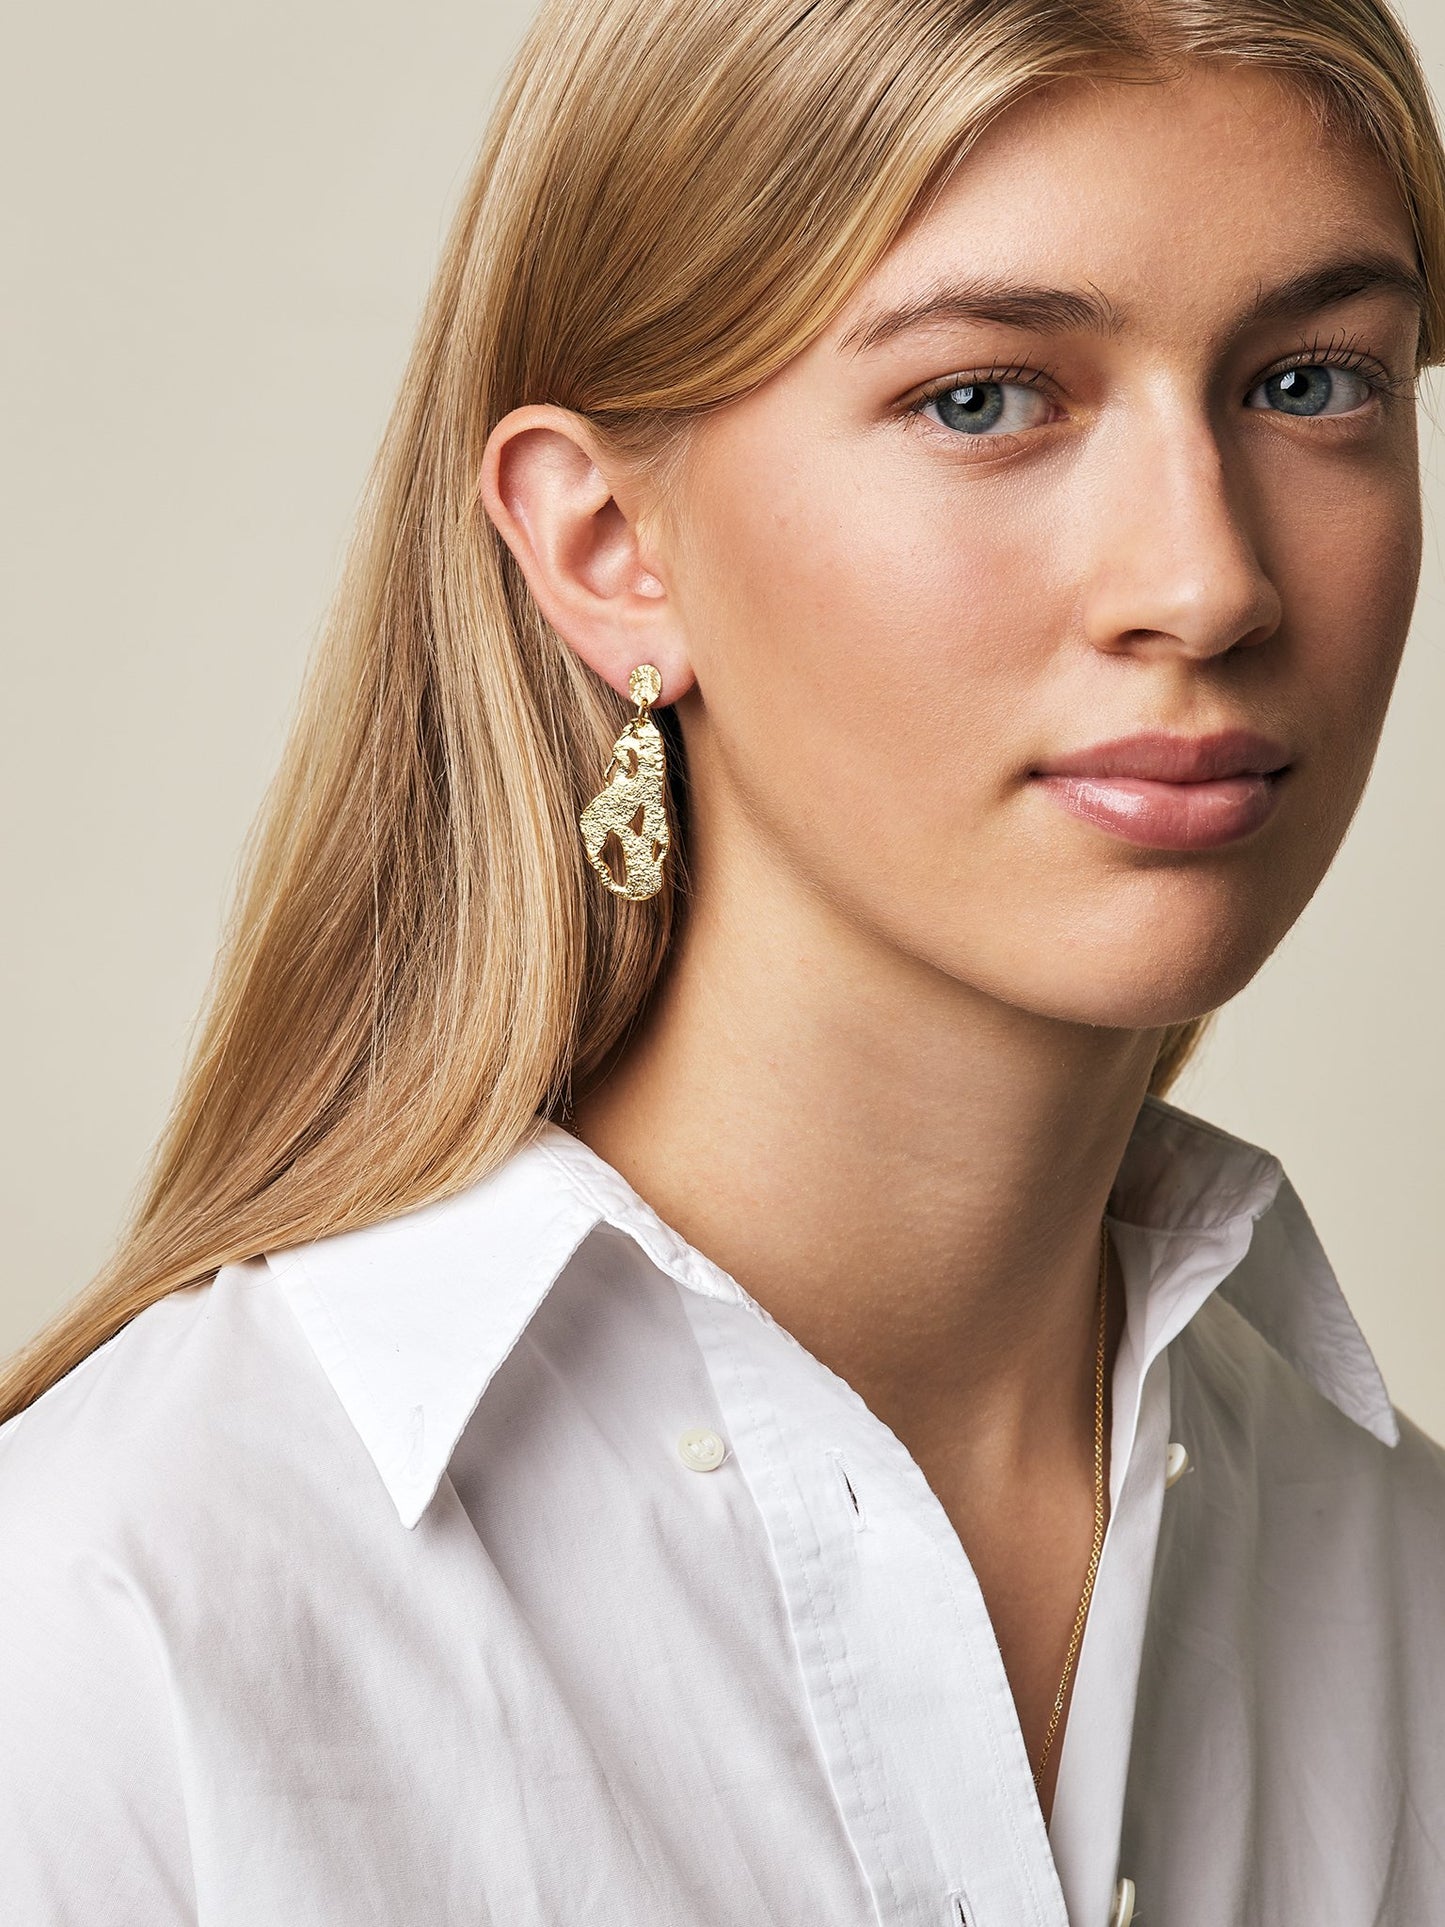 Organic Shapes - Seaweed earrings